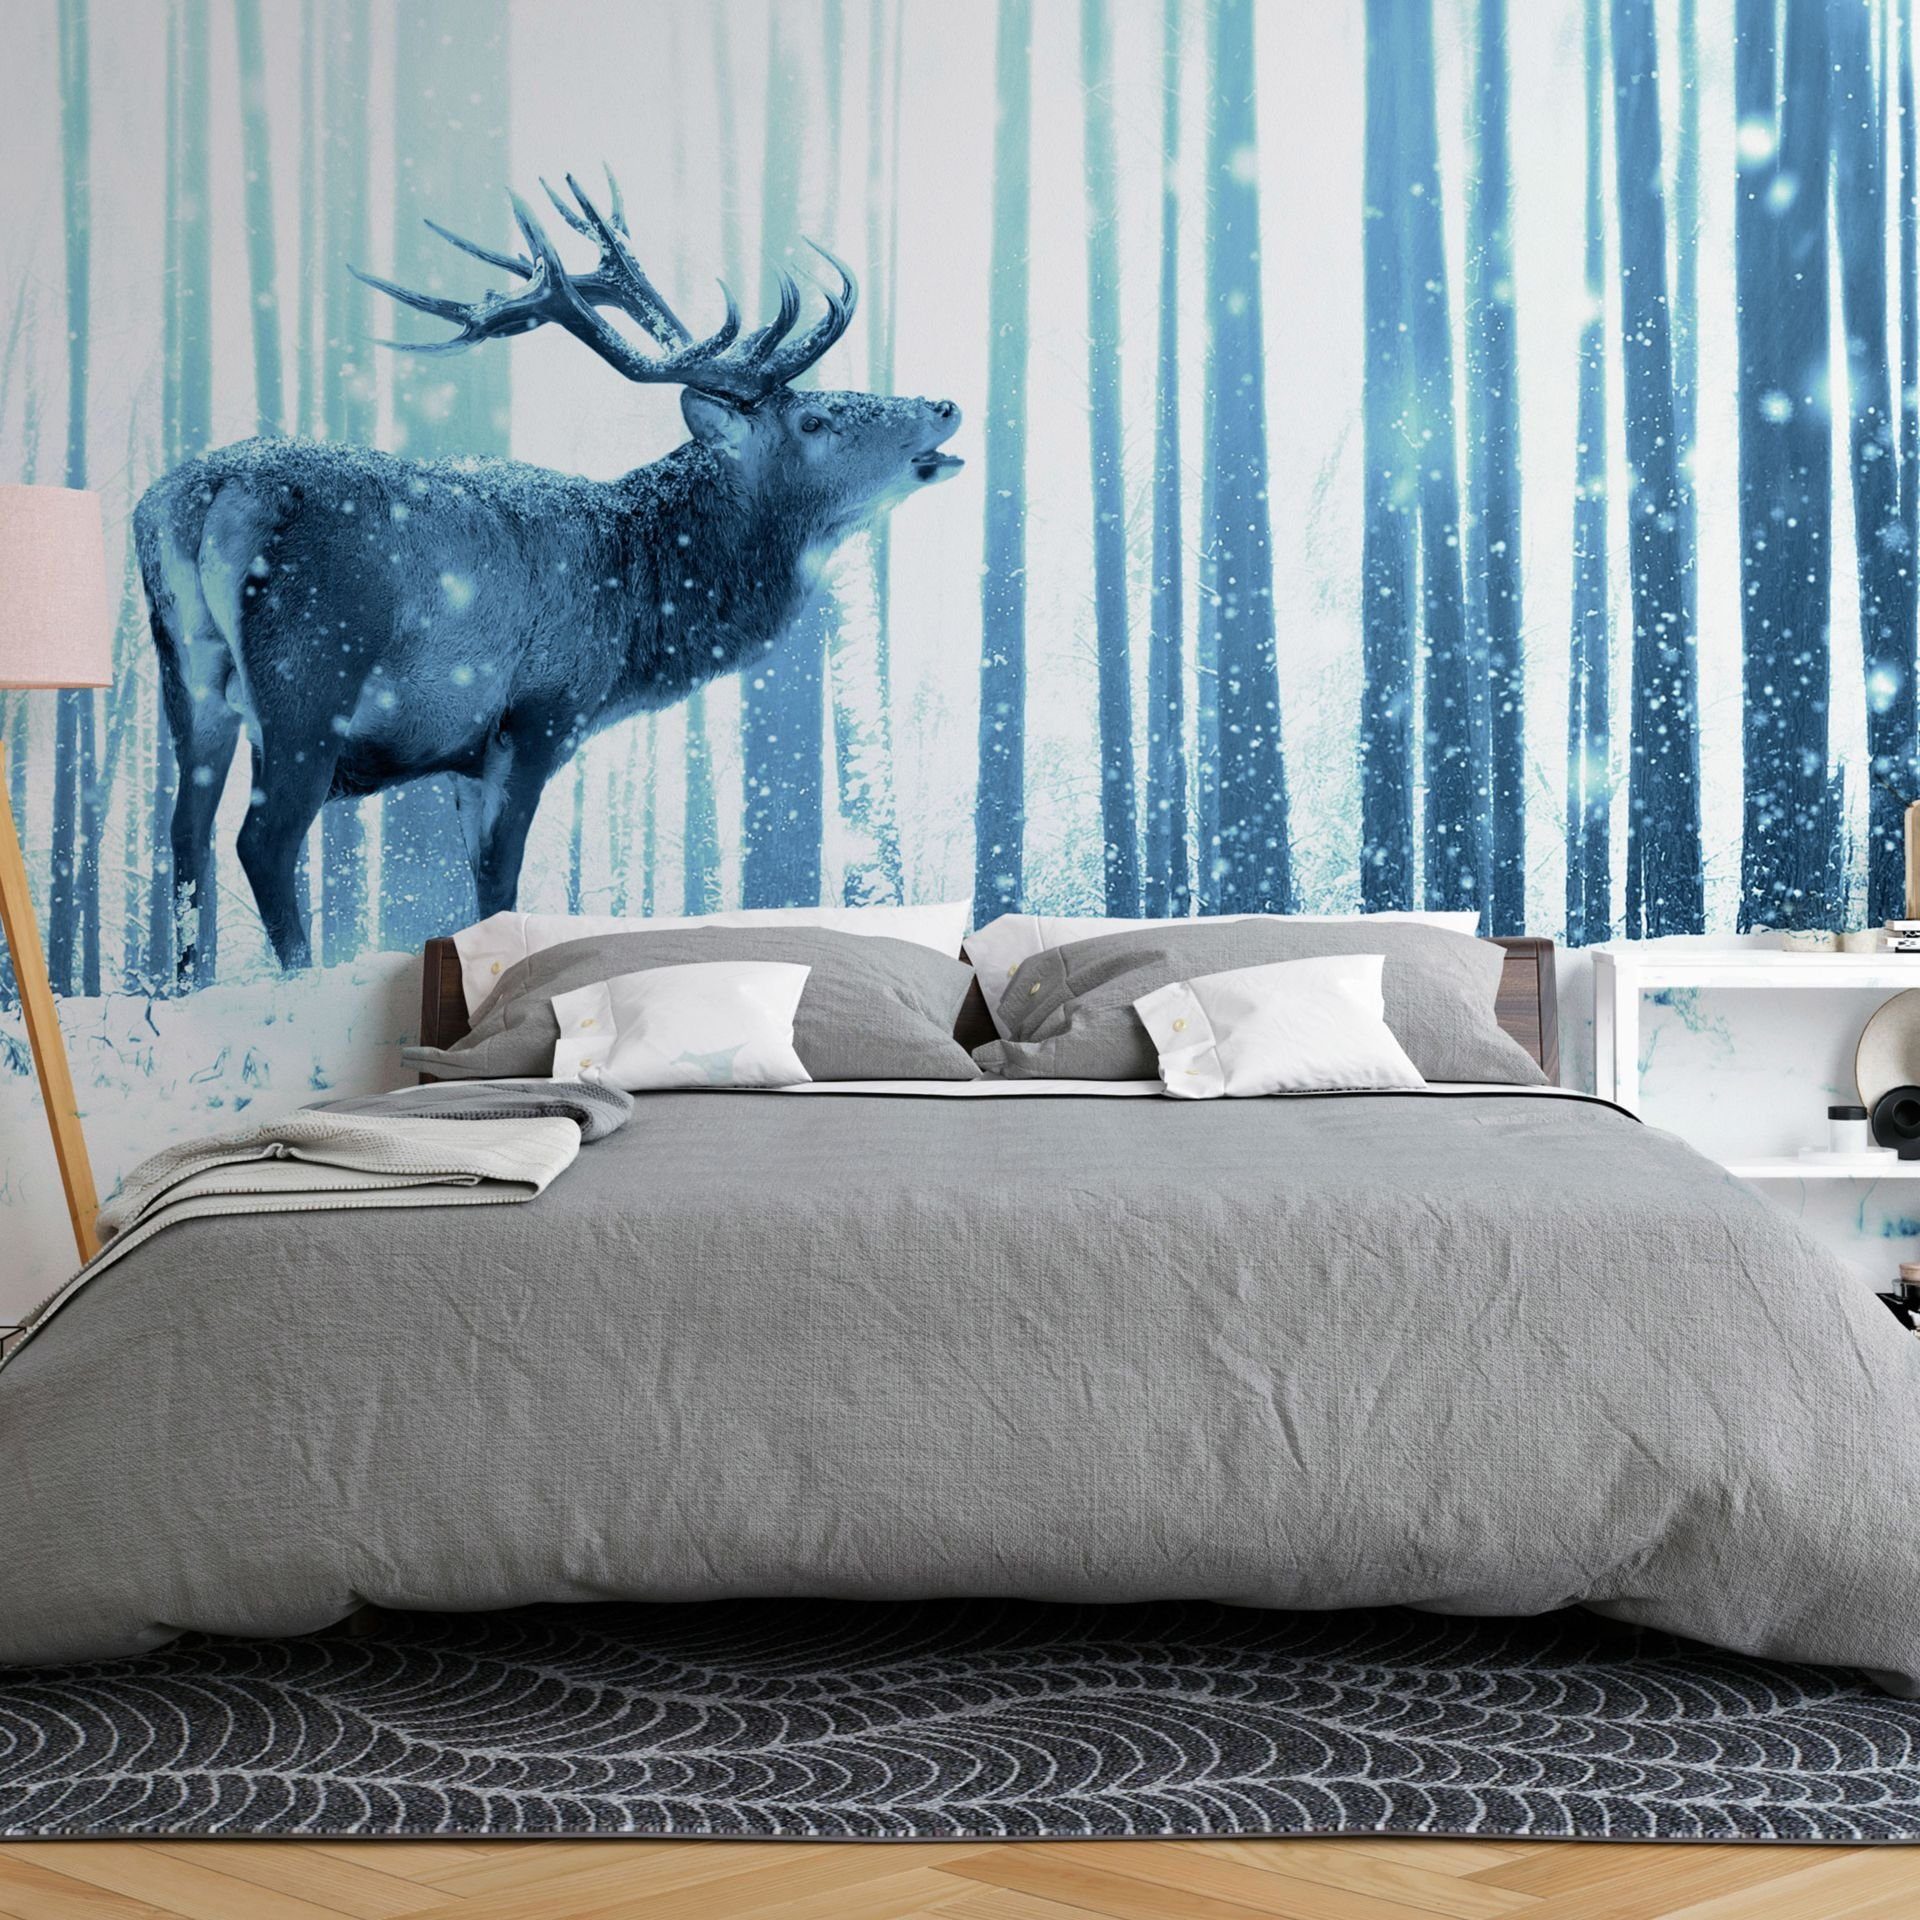 KUNSTLOFT Vliestapete Deer in the Snow (Blue) 0.98x0.7 m, matt, lichtbeständige Design Tapete